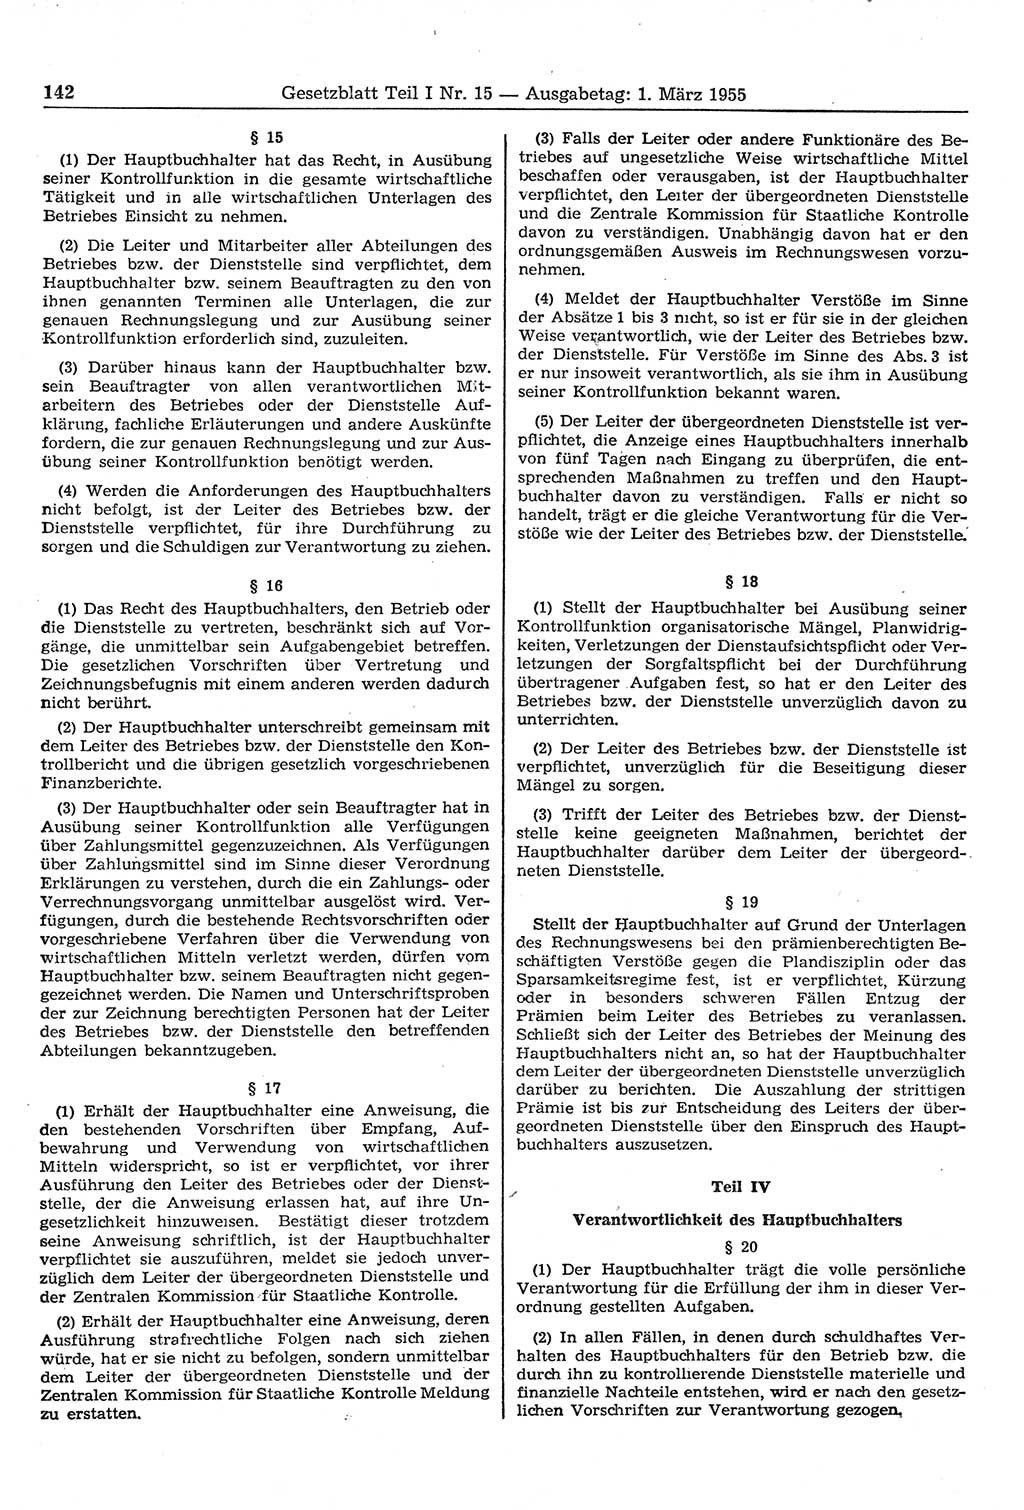 Gesetzblatt (GBl.) der Deutschen Demokratischen Republik (DDR) Teil Ⅰ 1955, Seite 142 (GBl. DDR Ⅰ 1955, S. 142)